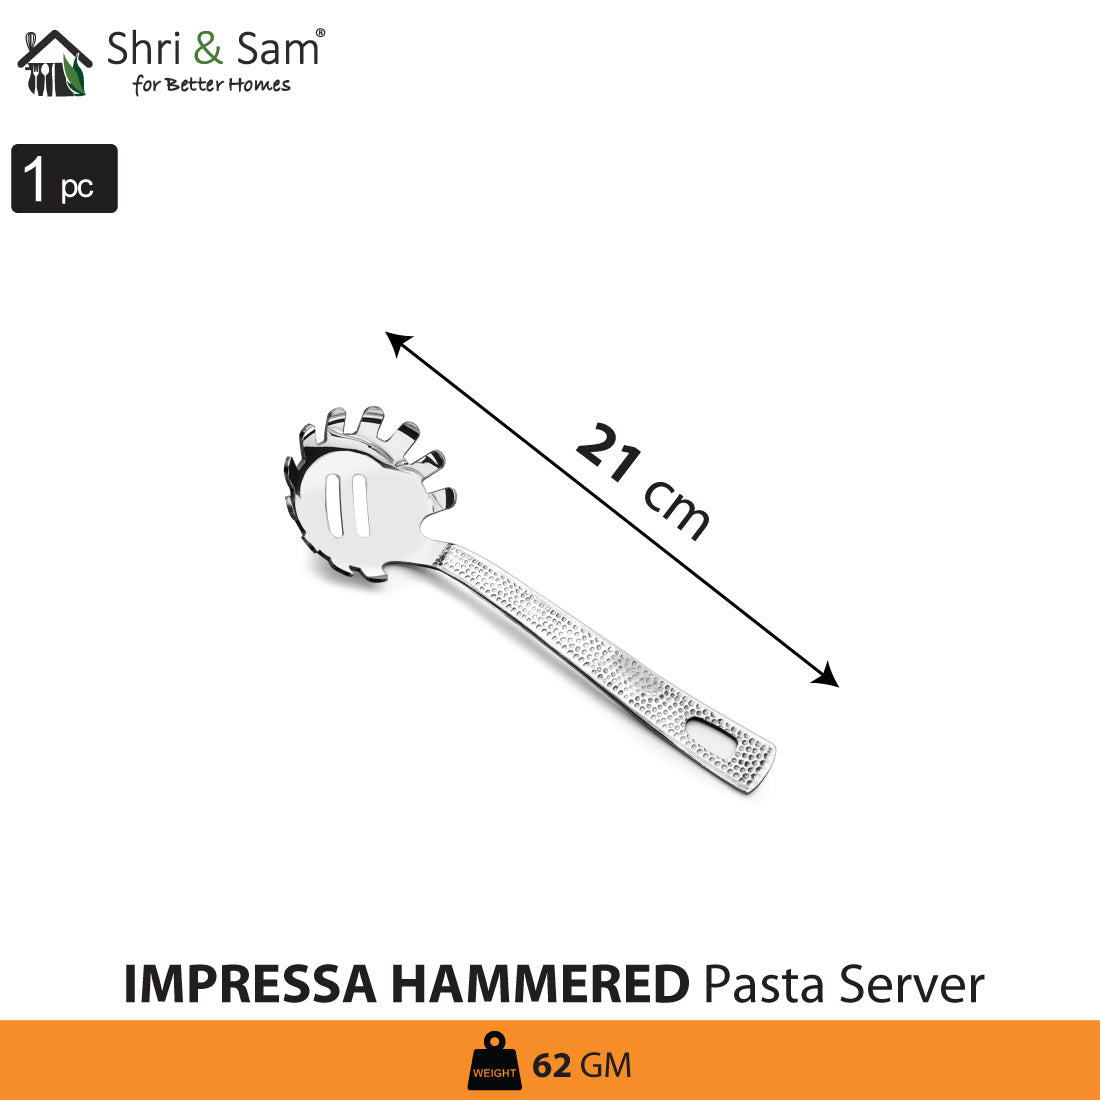 Stainless Steel Pasta Server Impressa Hammered